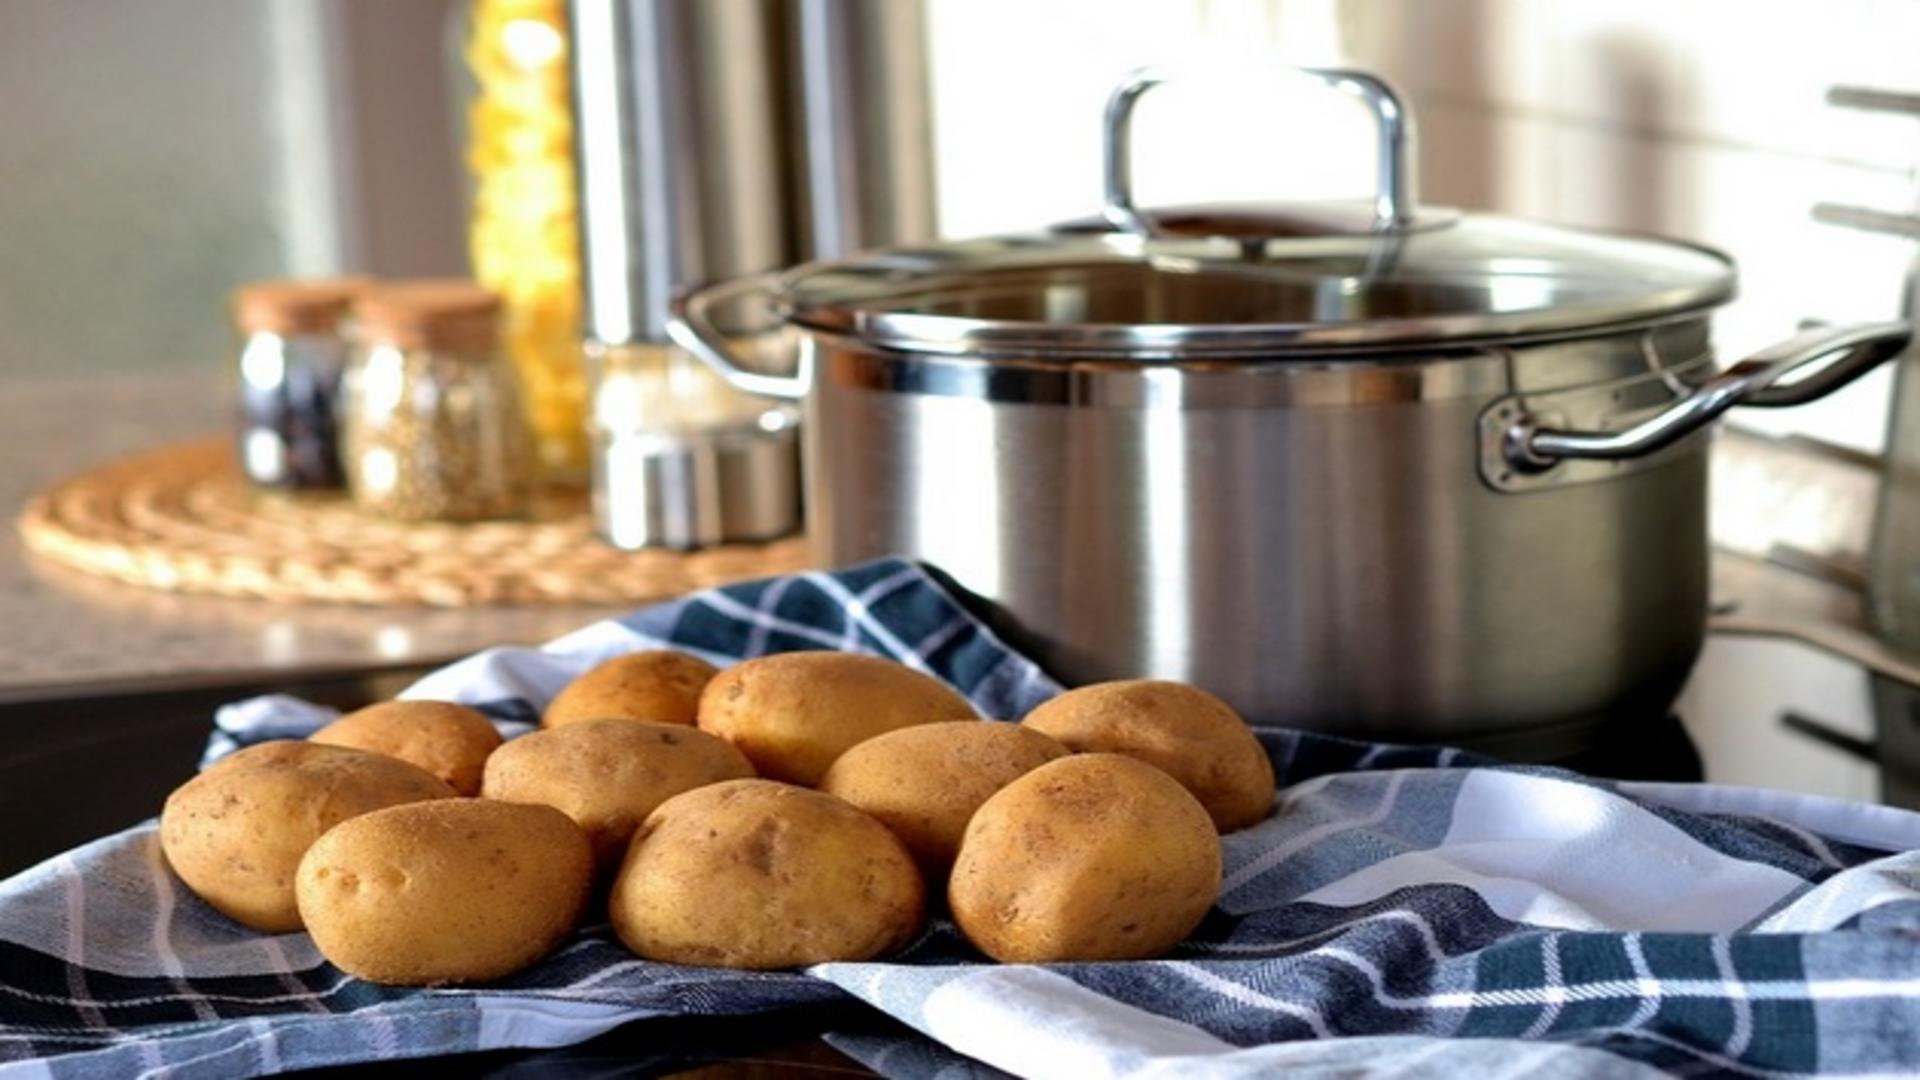 Vrei să obții cel mai pufos piure? Iată ce trebuie să pui în apa în care fierb cartofii!